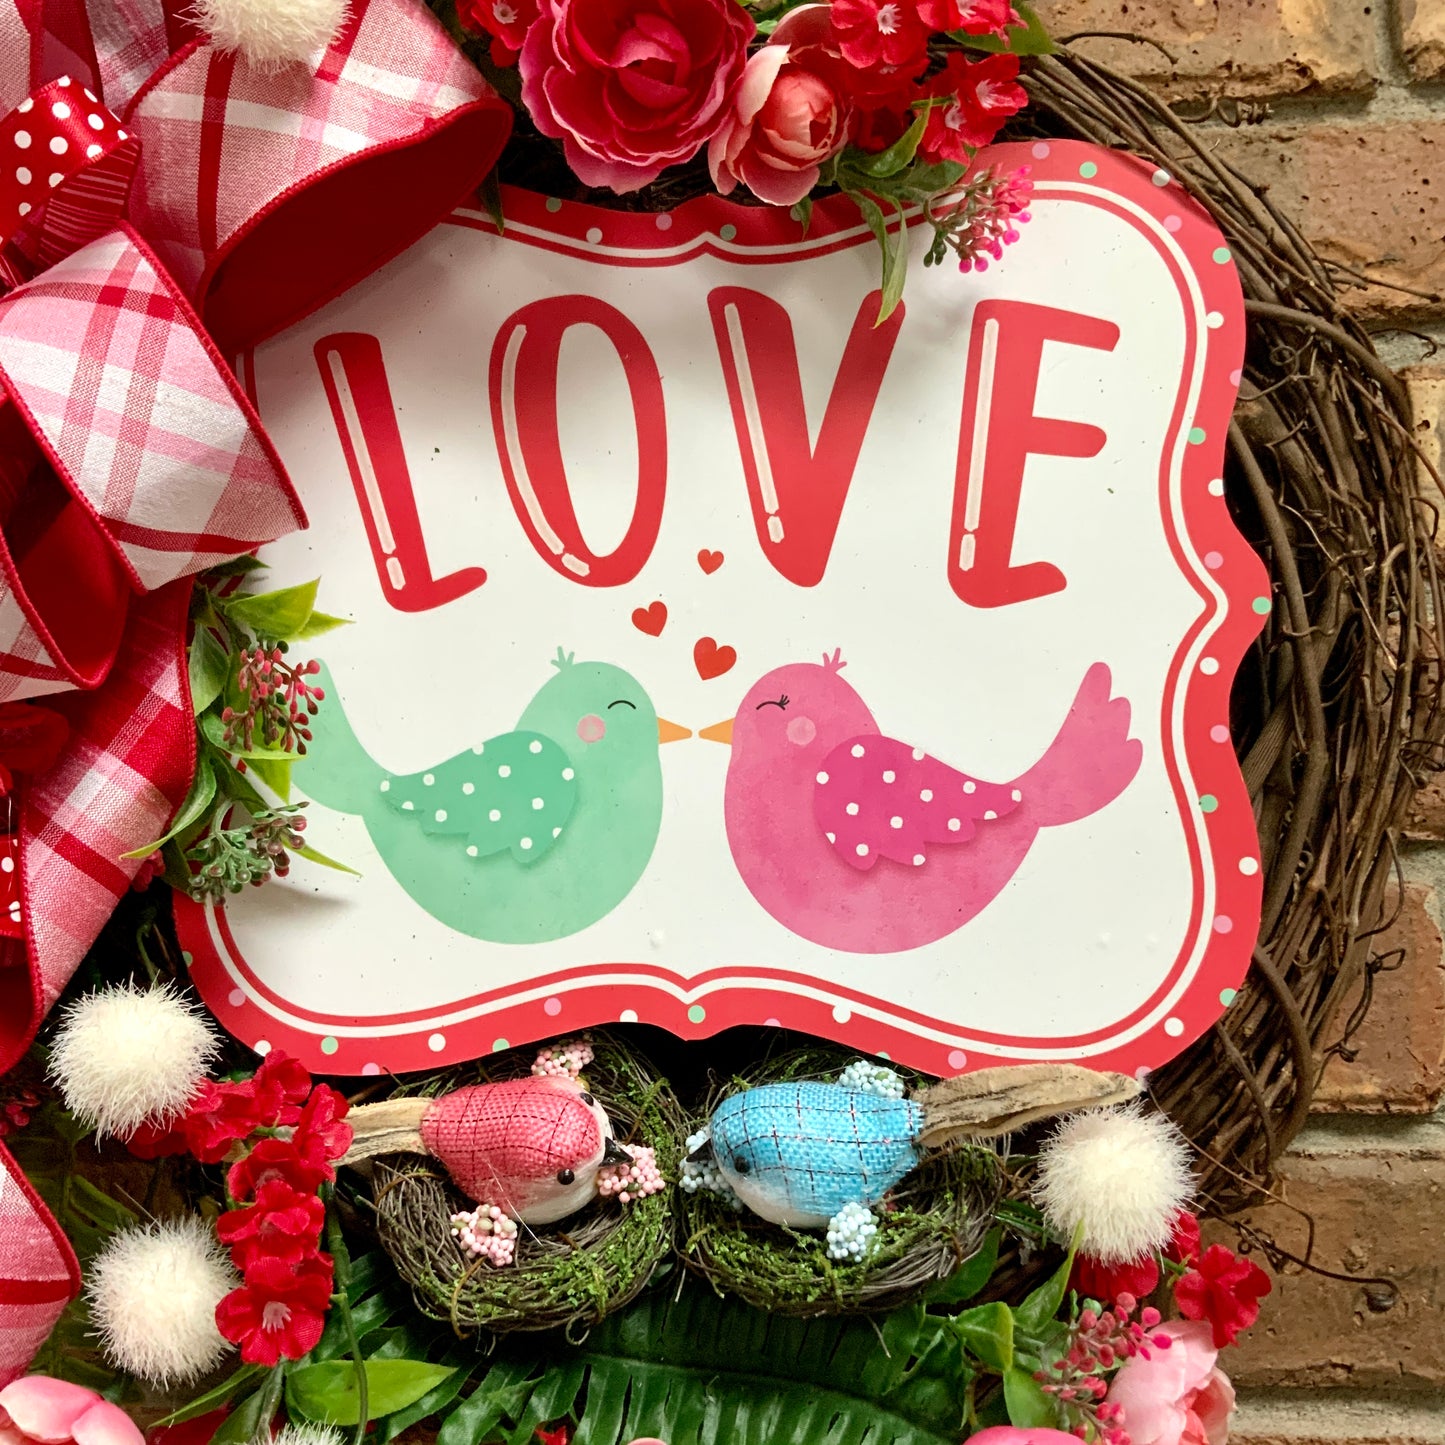 Valentines Day Wreath, Valentines Day Door Hanger, Valentine Grapevine Wreath, Valentine Day Heart Wreath, Heart Wreath